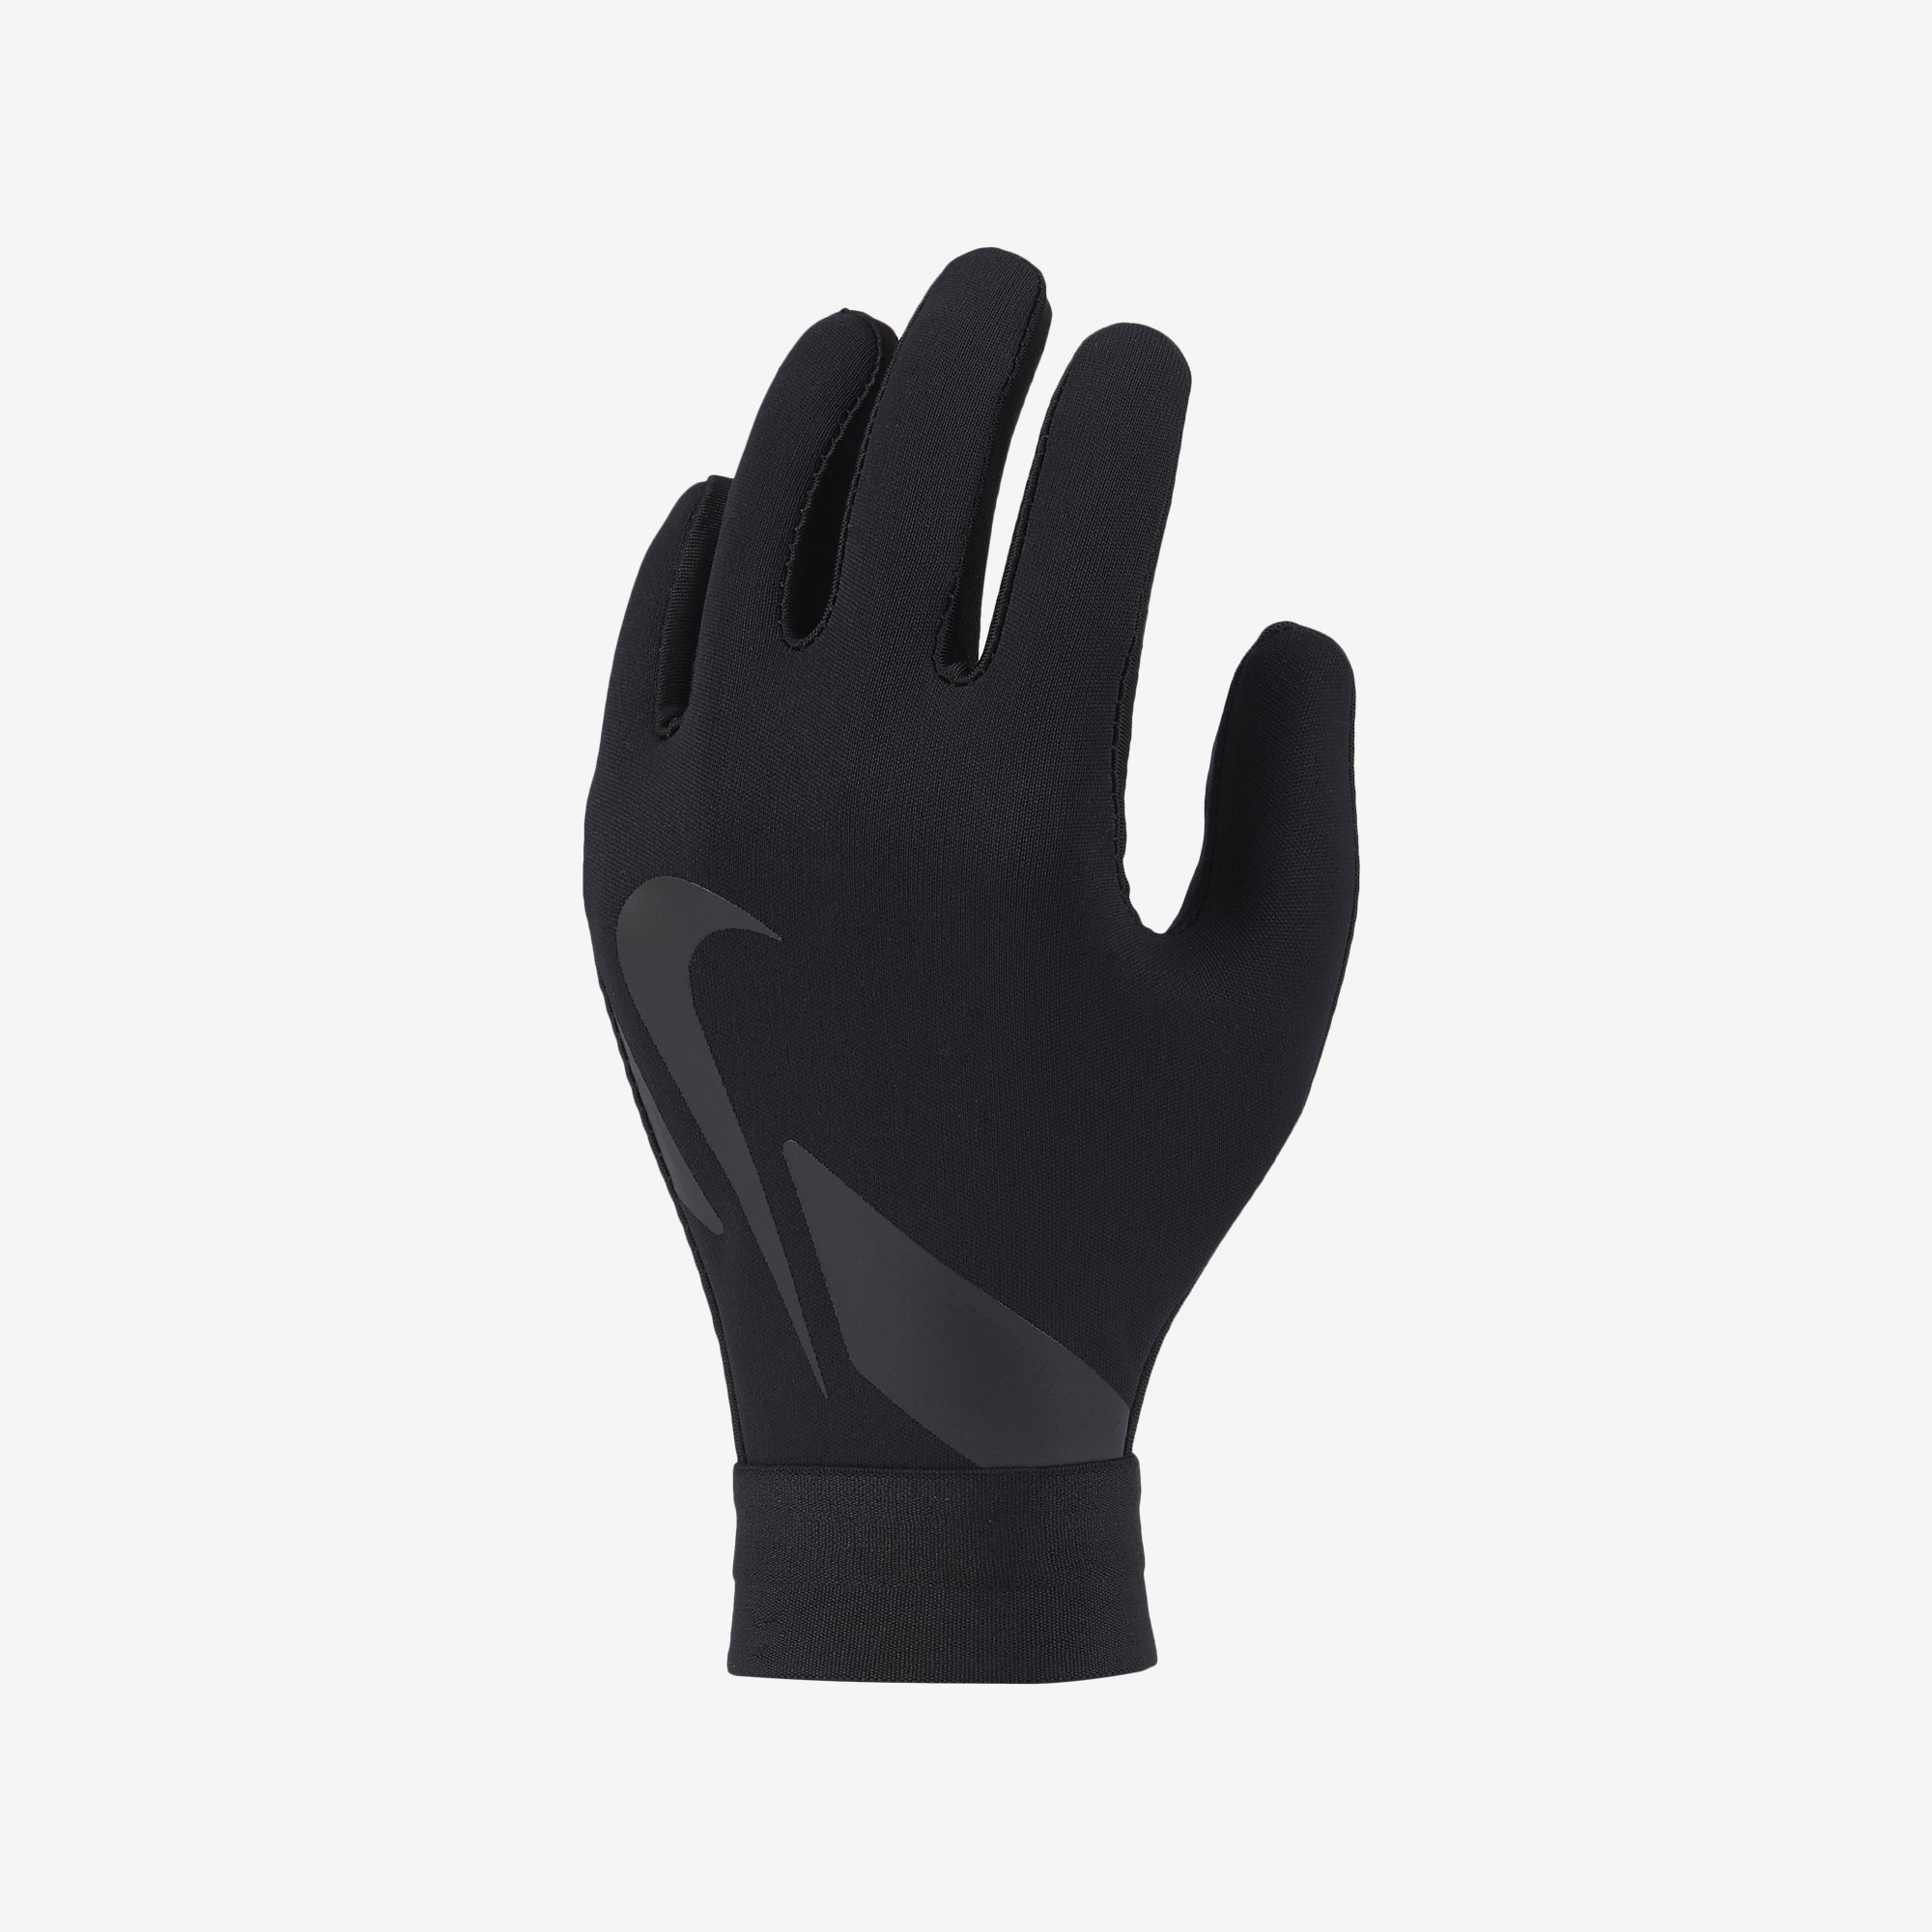 voorzetsel daar ben ik het mee eens Toerist stefanssoccer.com:Nike Youth Hyperwarm Academy Field Player Gloves - Black